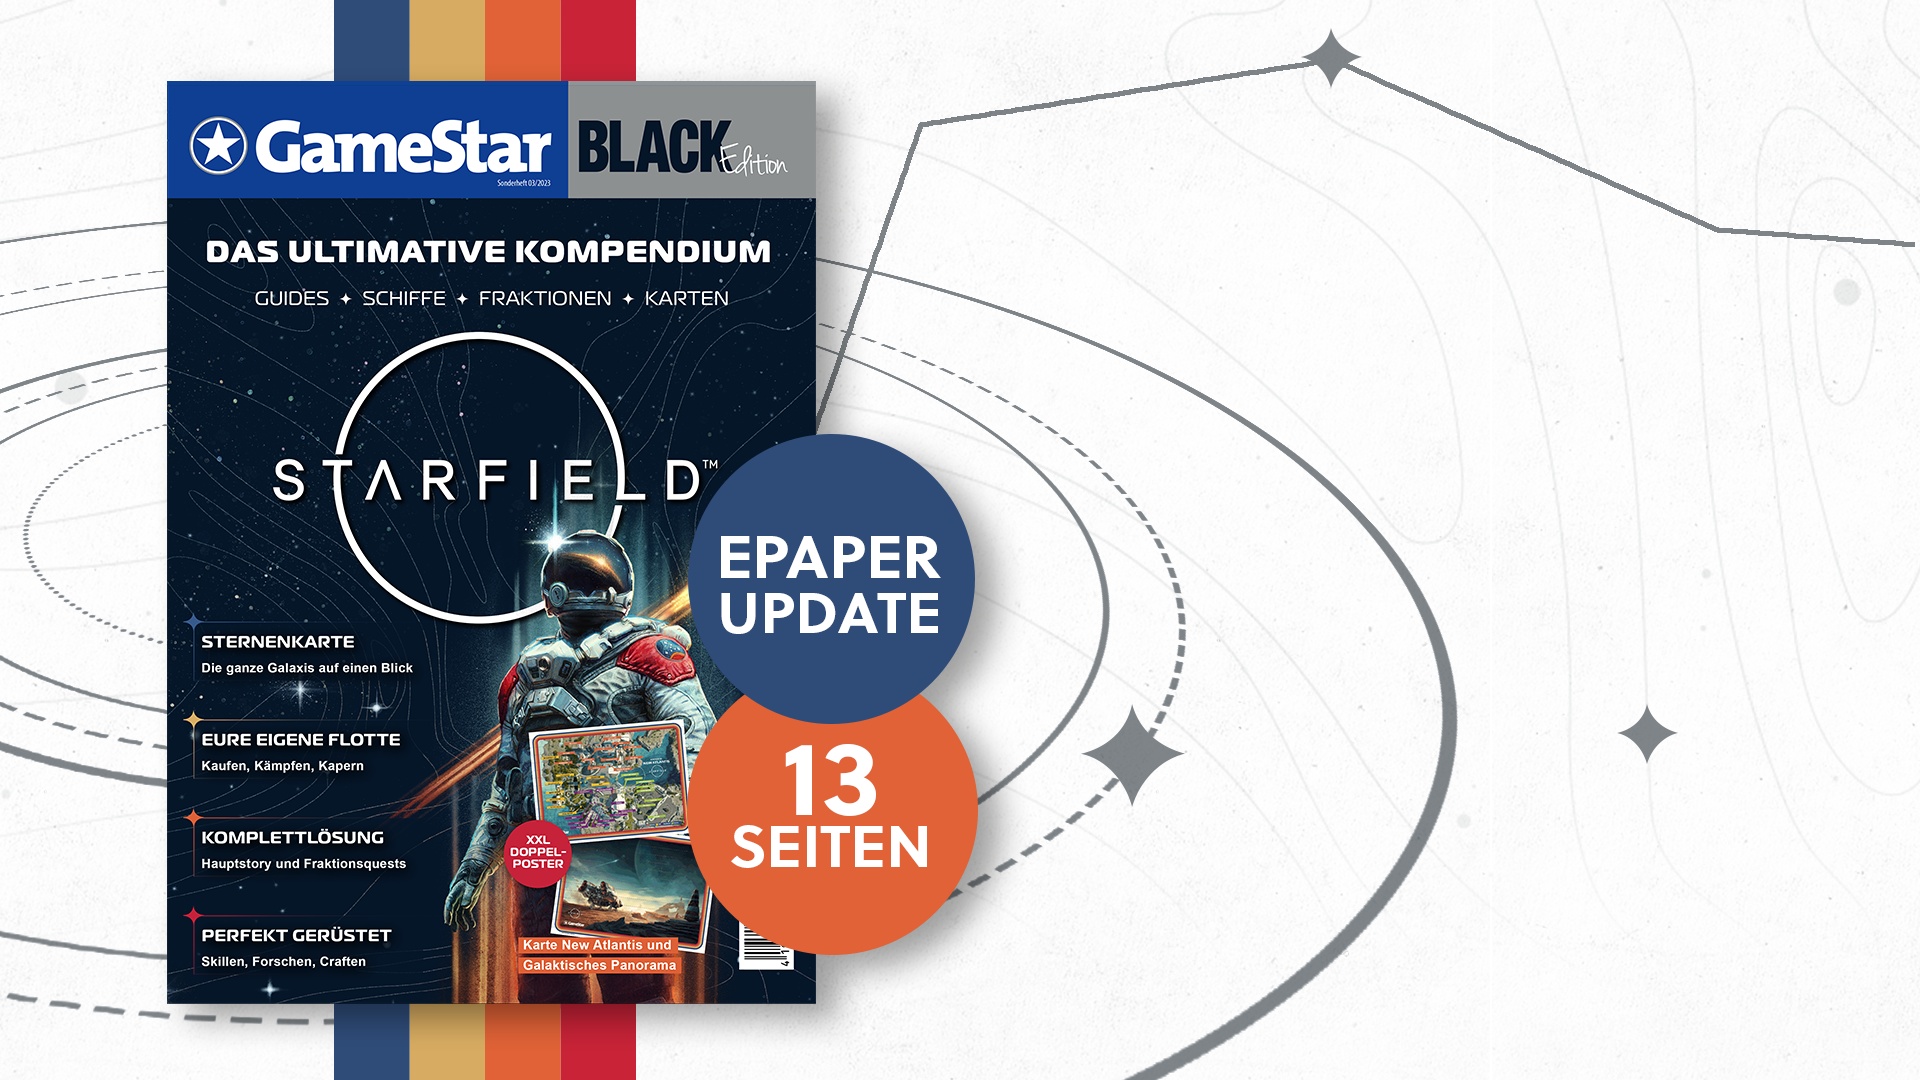 #Jetzt mit dickem Epaper-Update: Die große GameStar Black Edition zu Starfield